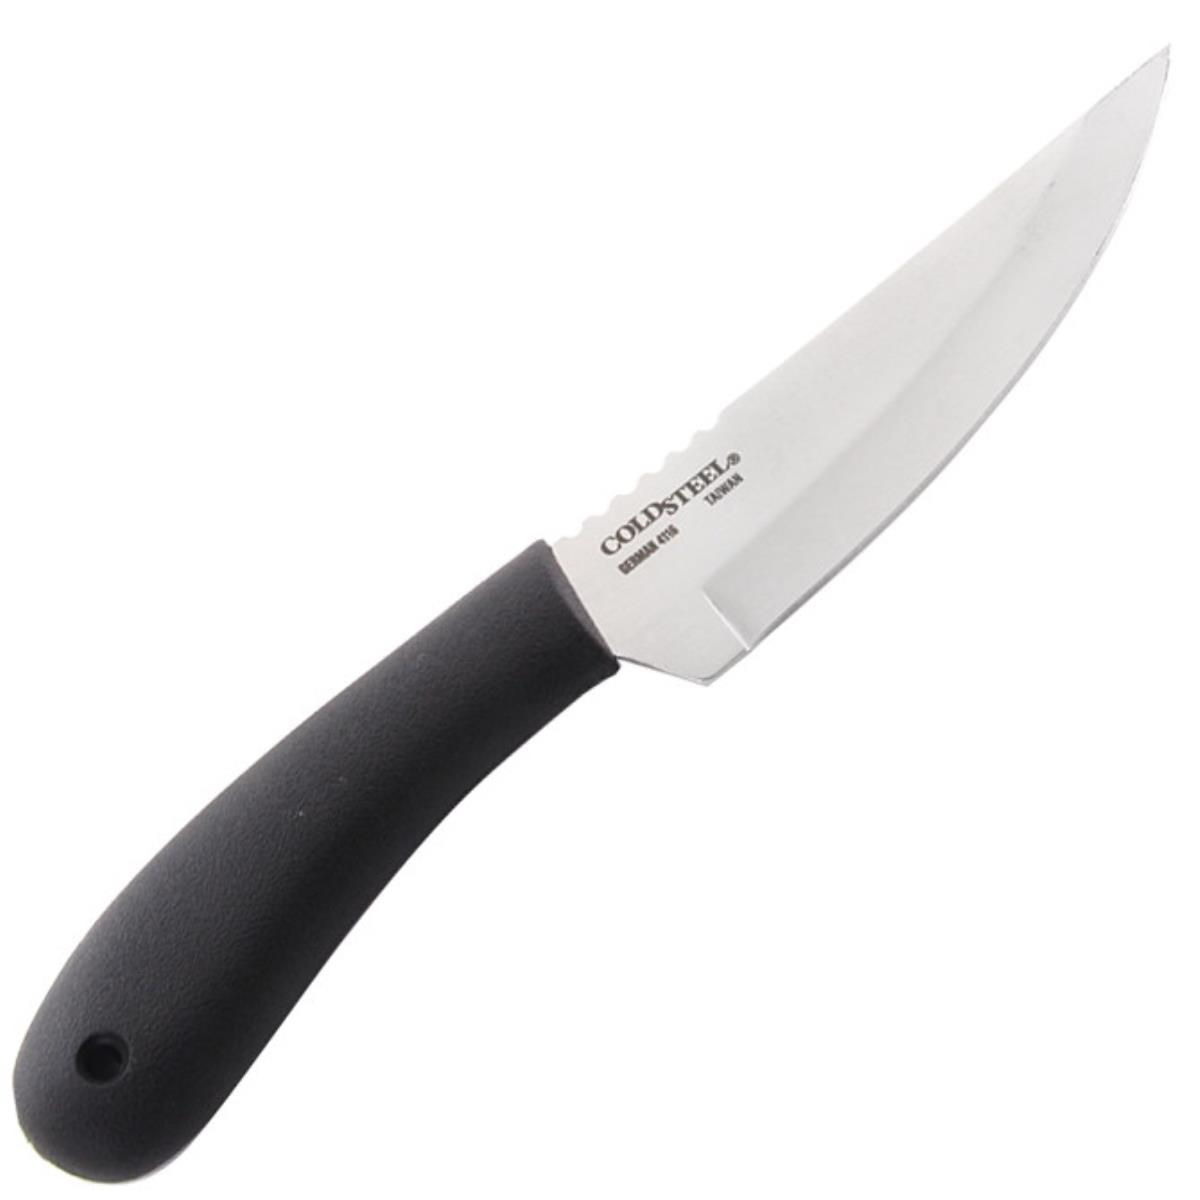 Нож сталь 4116 German, ножны пластик 20RBC Roach Belly Cold Steel складной нож crkt xan сталь 1 4116 ss рукоять g10